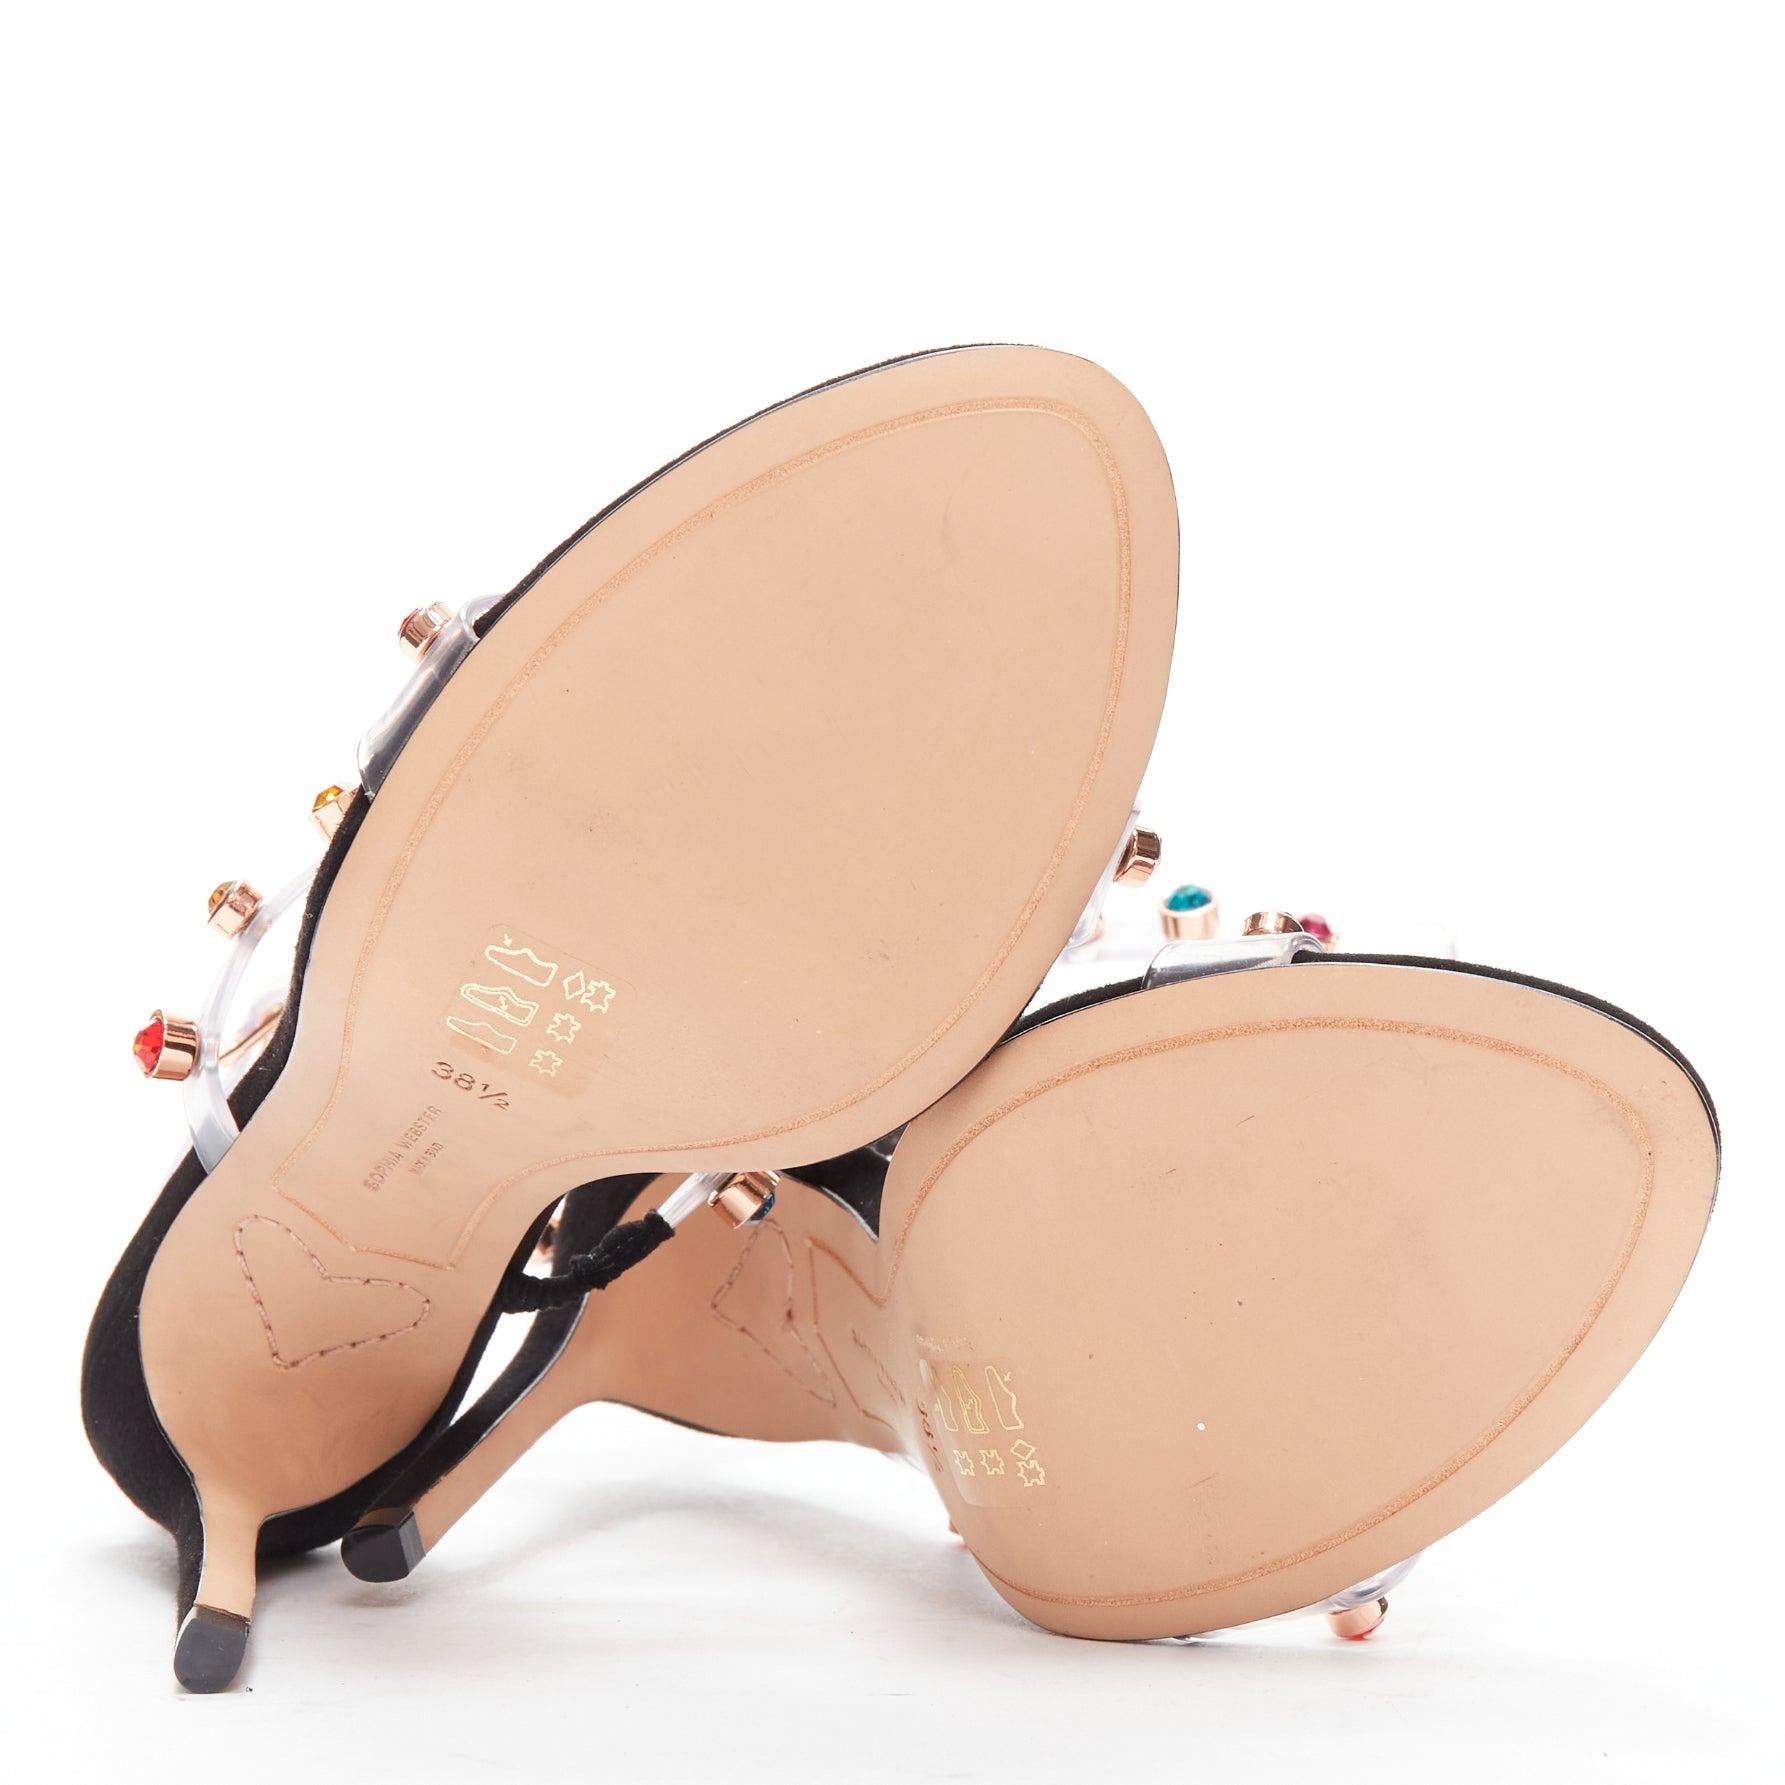 SOPHIA WEBSTER Rosalind 100 multicolor gem crystal PVC strappy heels EU38.5 For Sale 6